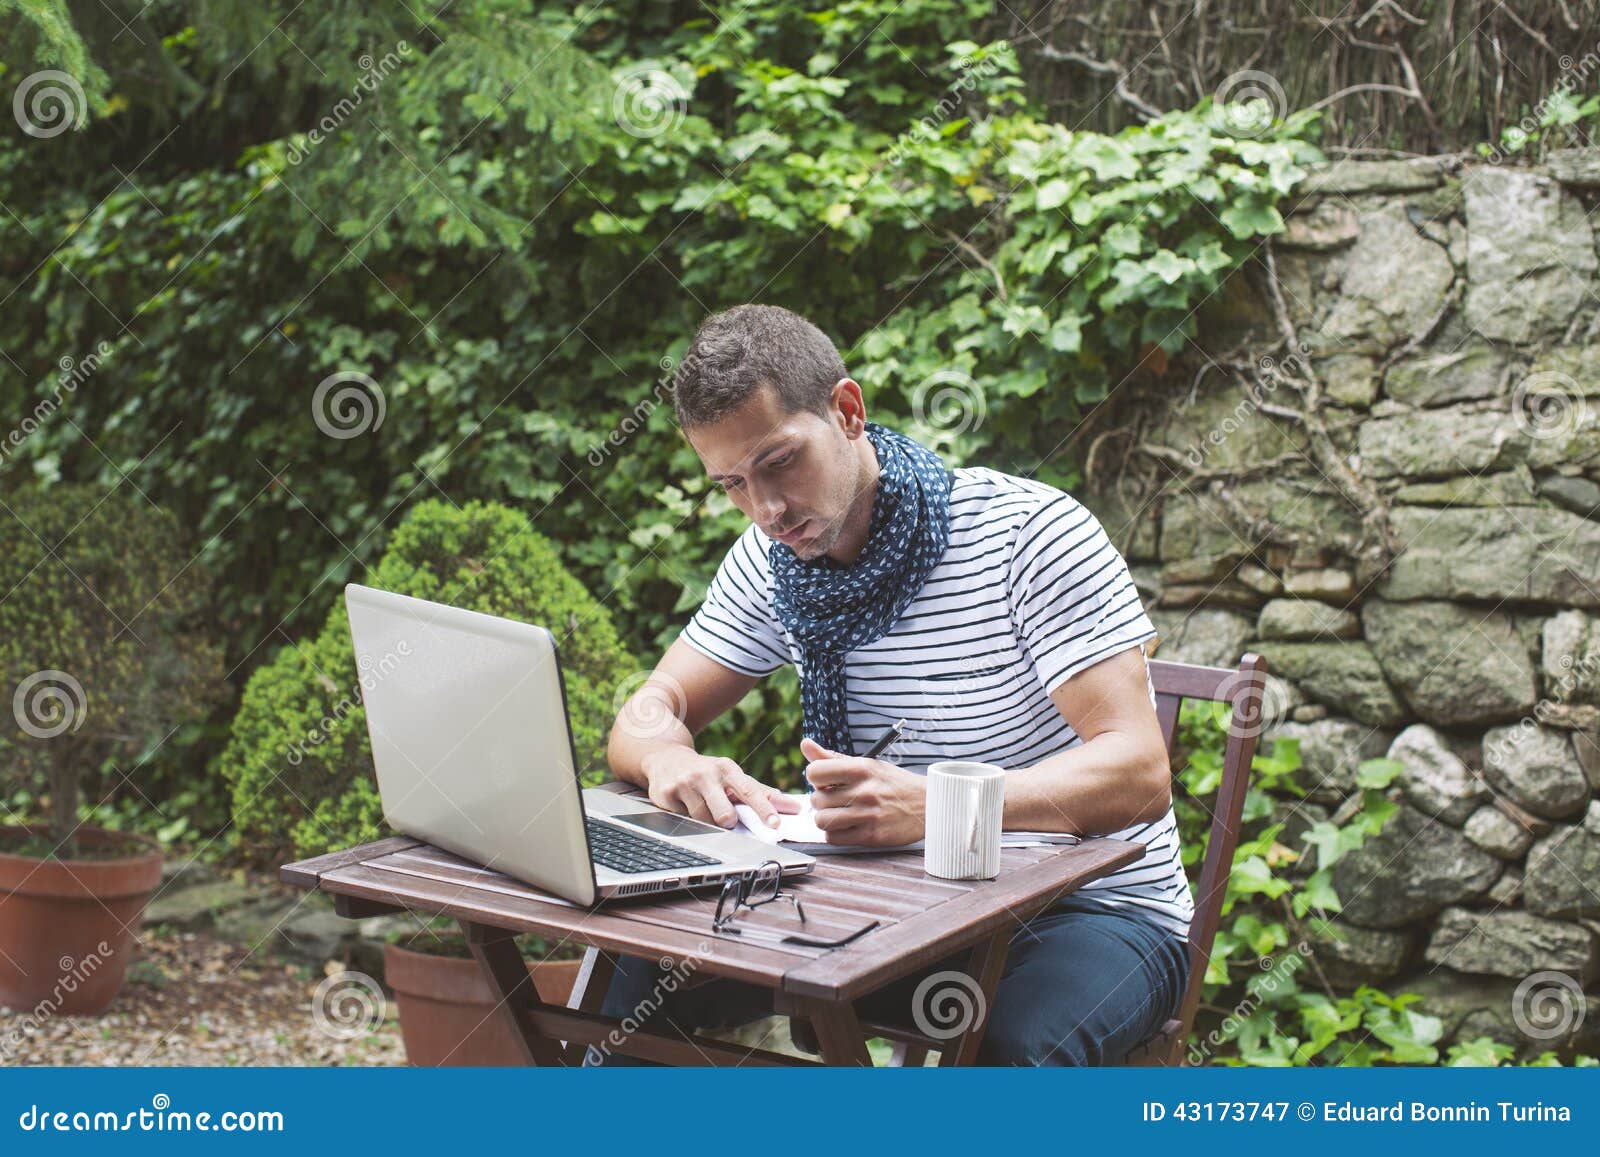 Jeune homme travaillant avec l'ordinateur portable dedans dehors. Homme attirant travaillant dans votre jardin